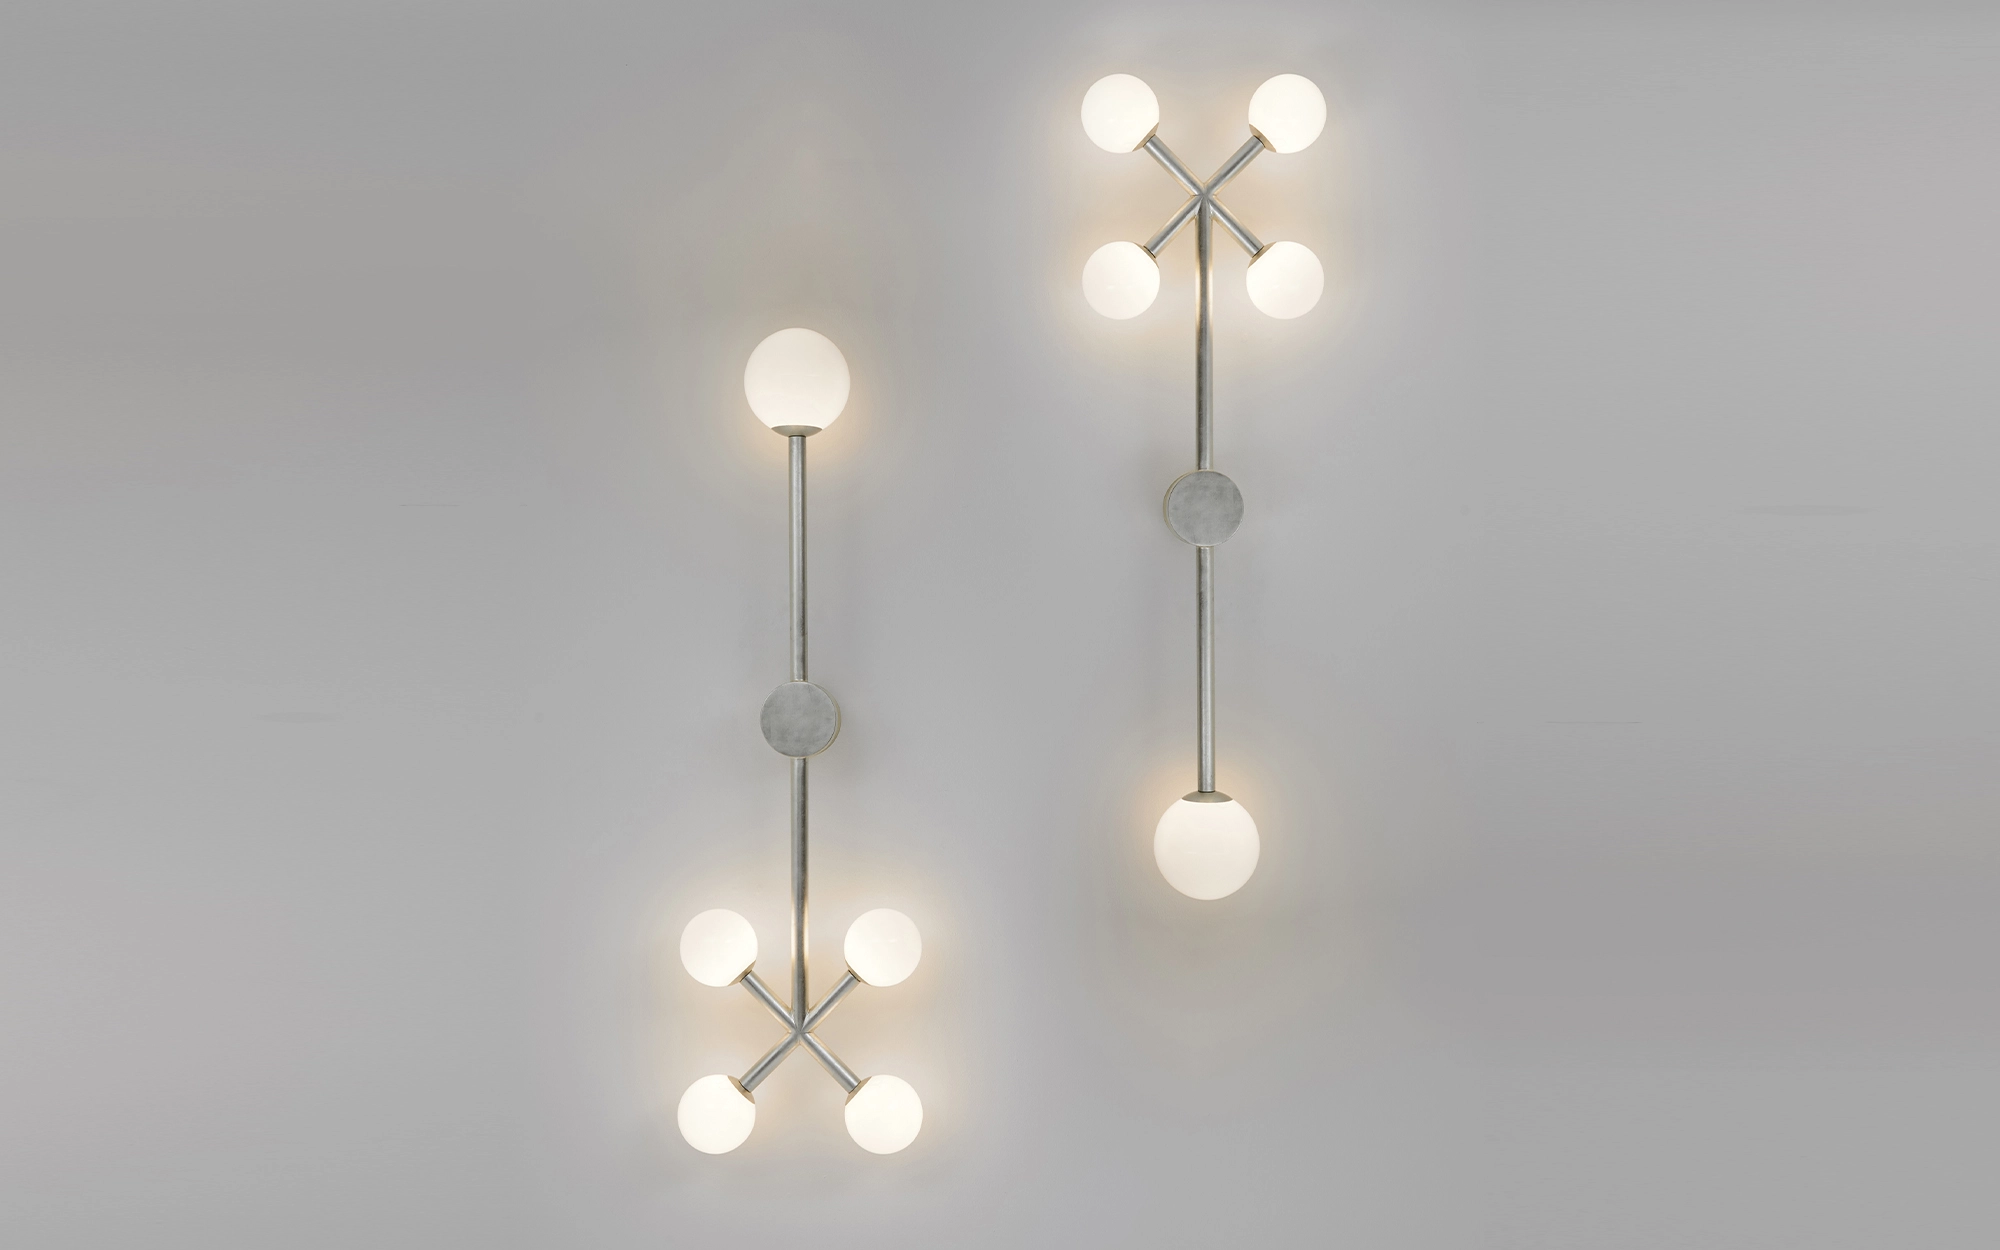 Wink Wall light - Jaime Hayon - Mirror - Galerie kreo